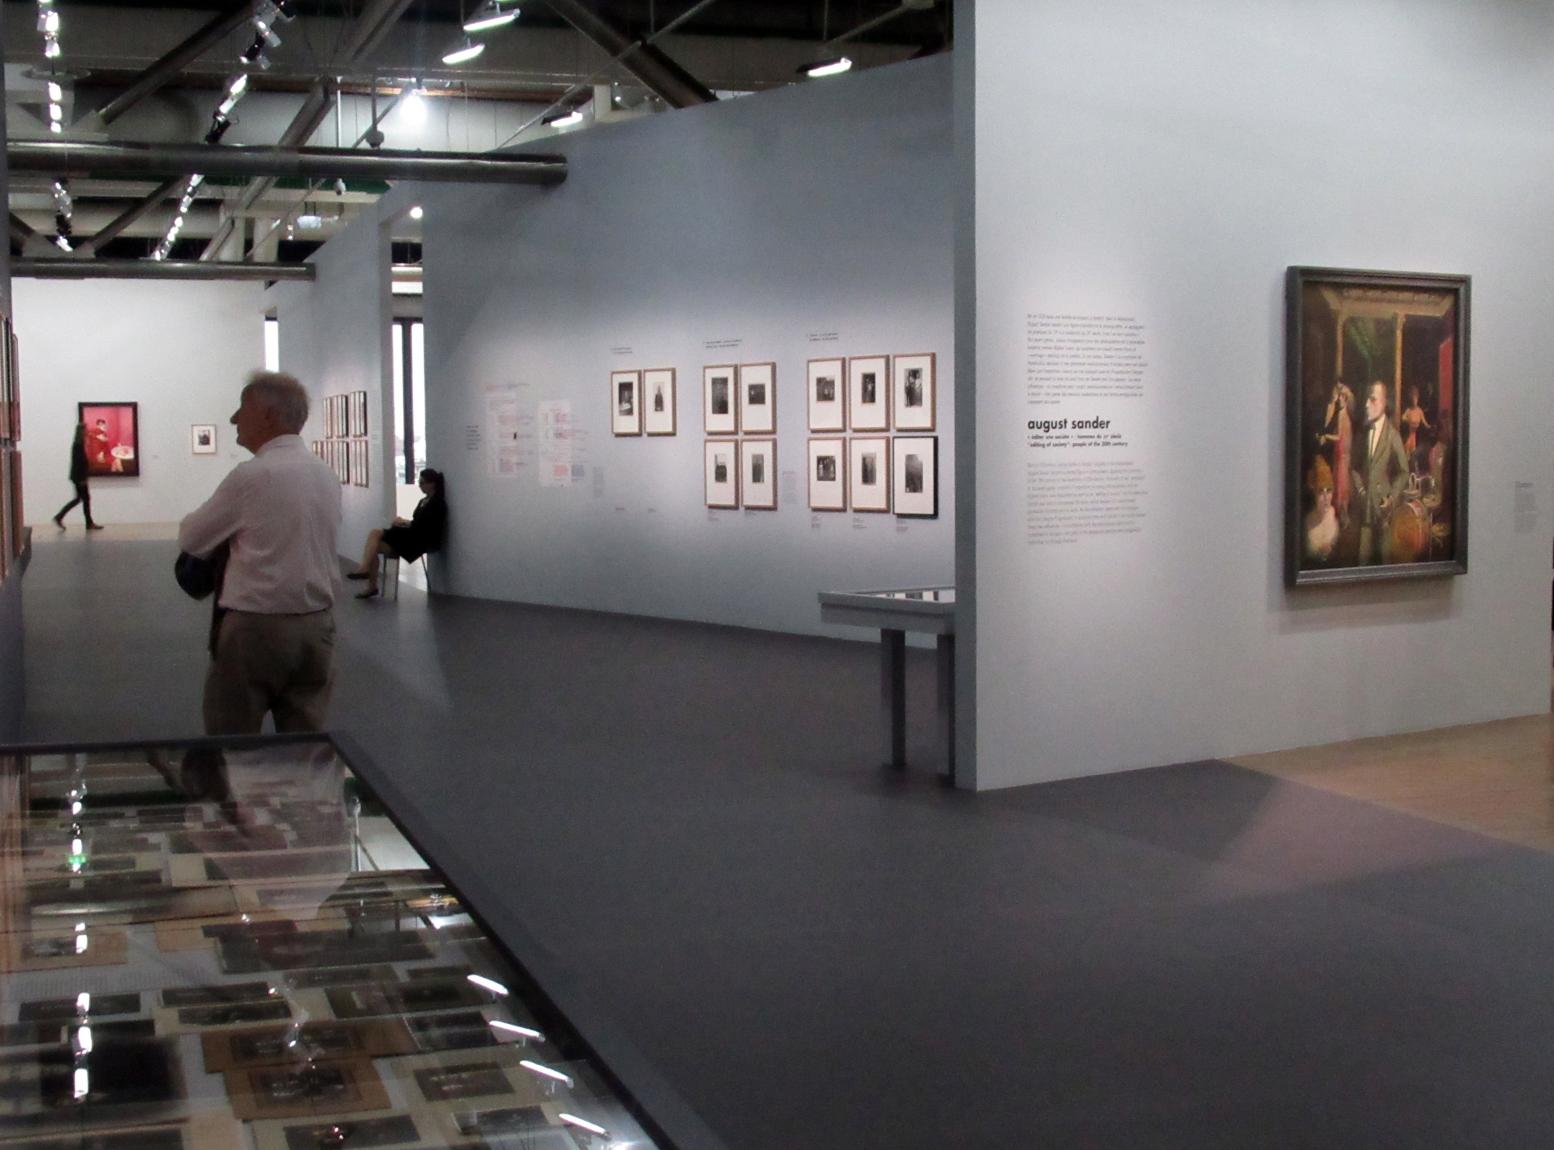 Besucher gehen durch die Werkschau "Deutschland / 1920er Jahre / Neue Sachlichkeit / August Sander". Rechts hängt das Gemälde "An die Schönheit", ein Selbstbildnis von Otto Dix aus dem Jahr 1922